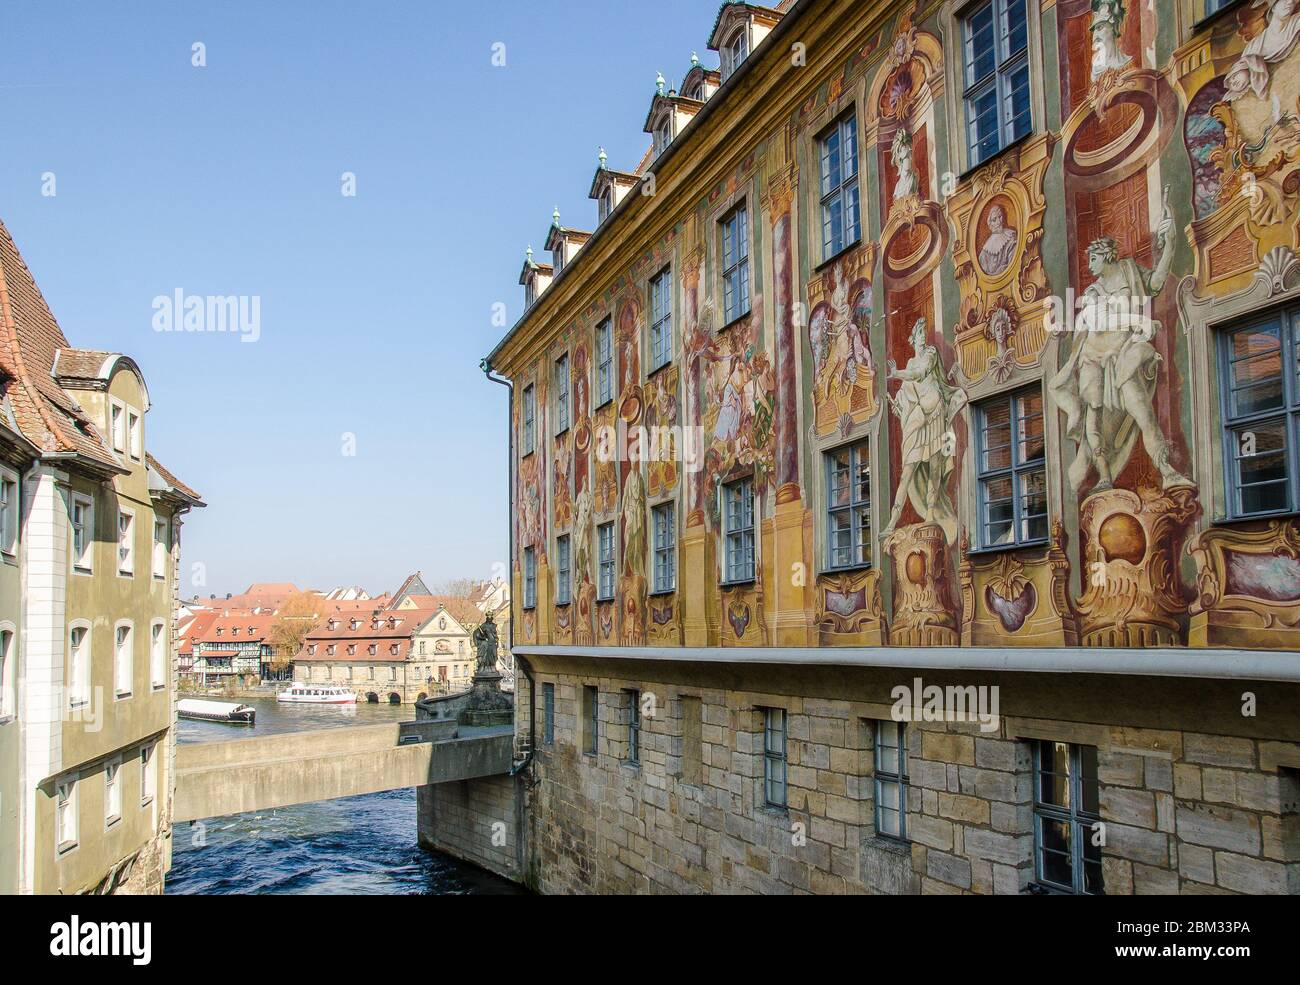 Quedlinburg, eine Stadt nördlich des Harzes, wurde 1994 von der UNESCO zum Weltkulturerbe erklärt. Stockfoto